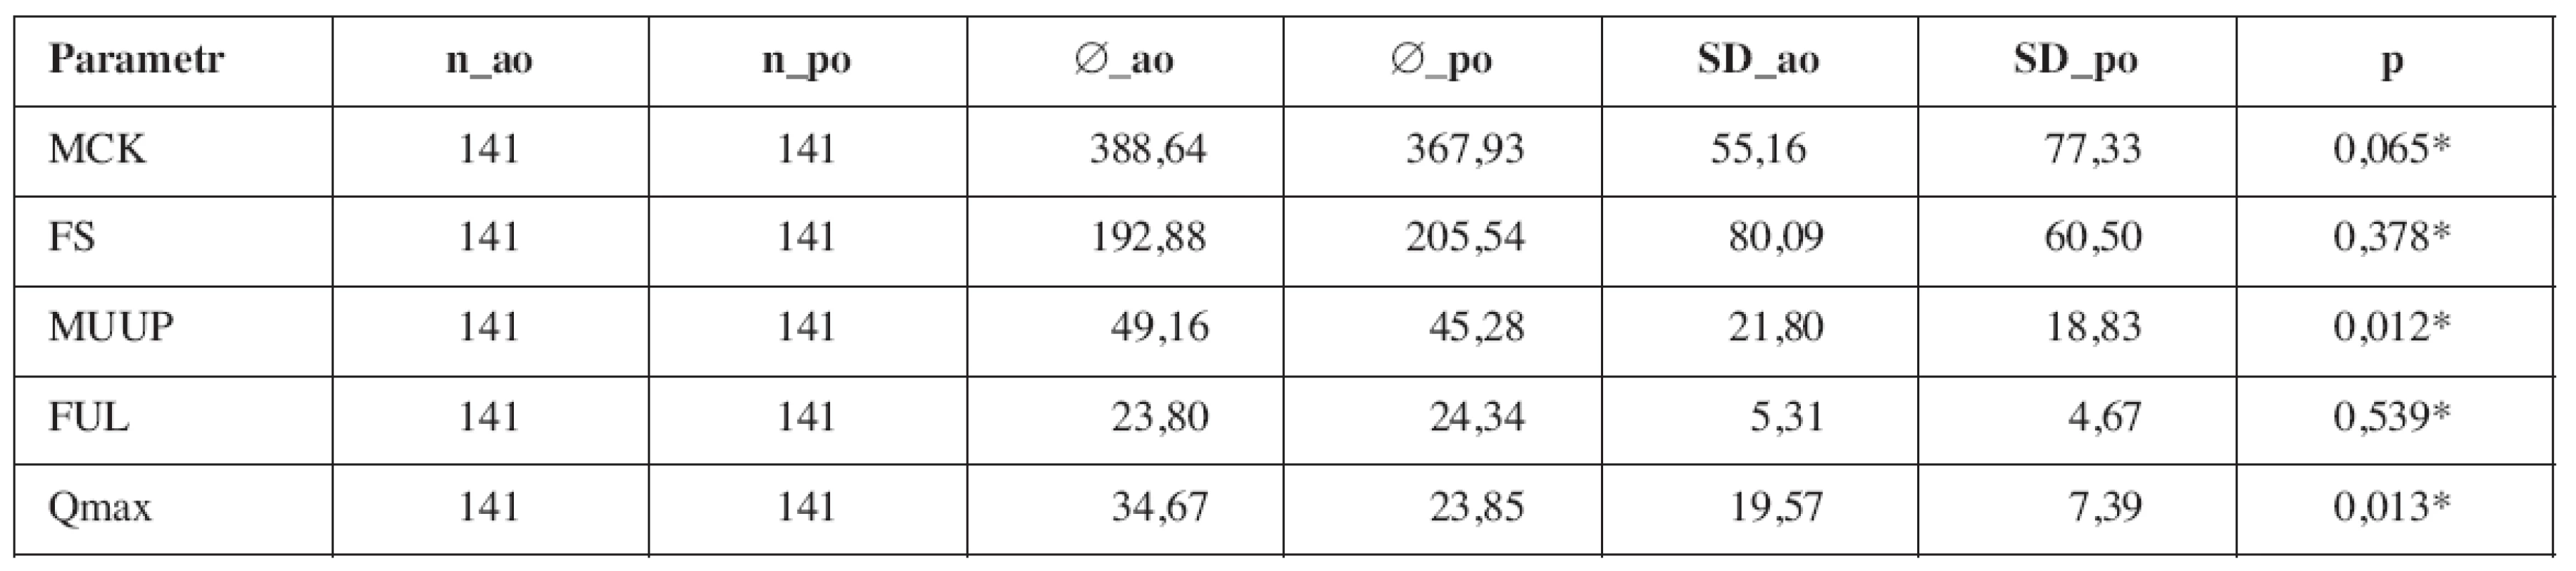 Porovnání průměrů urodynamických parametrů pacientů skupiny TVTTM před (_ao) a po (_po) operaci